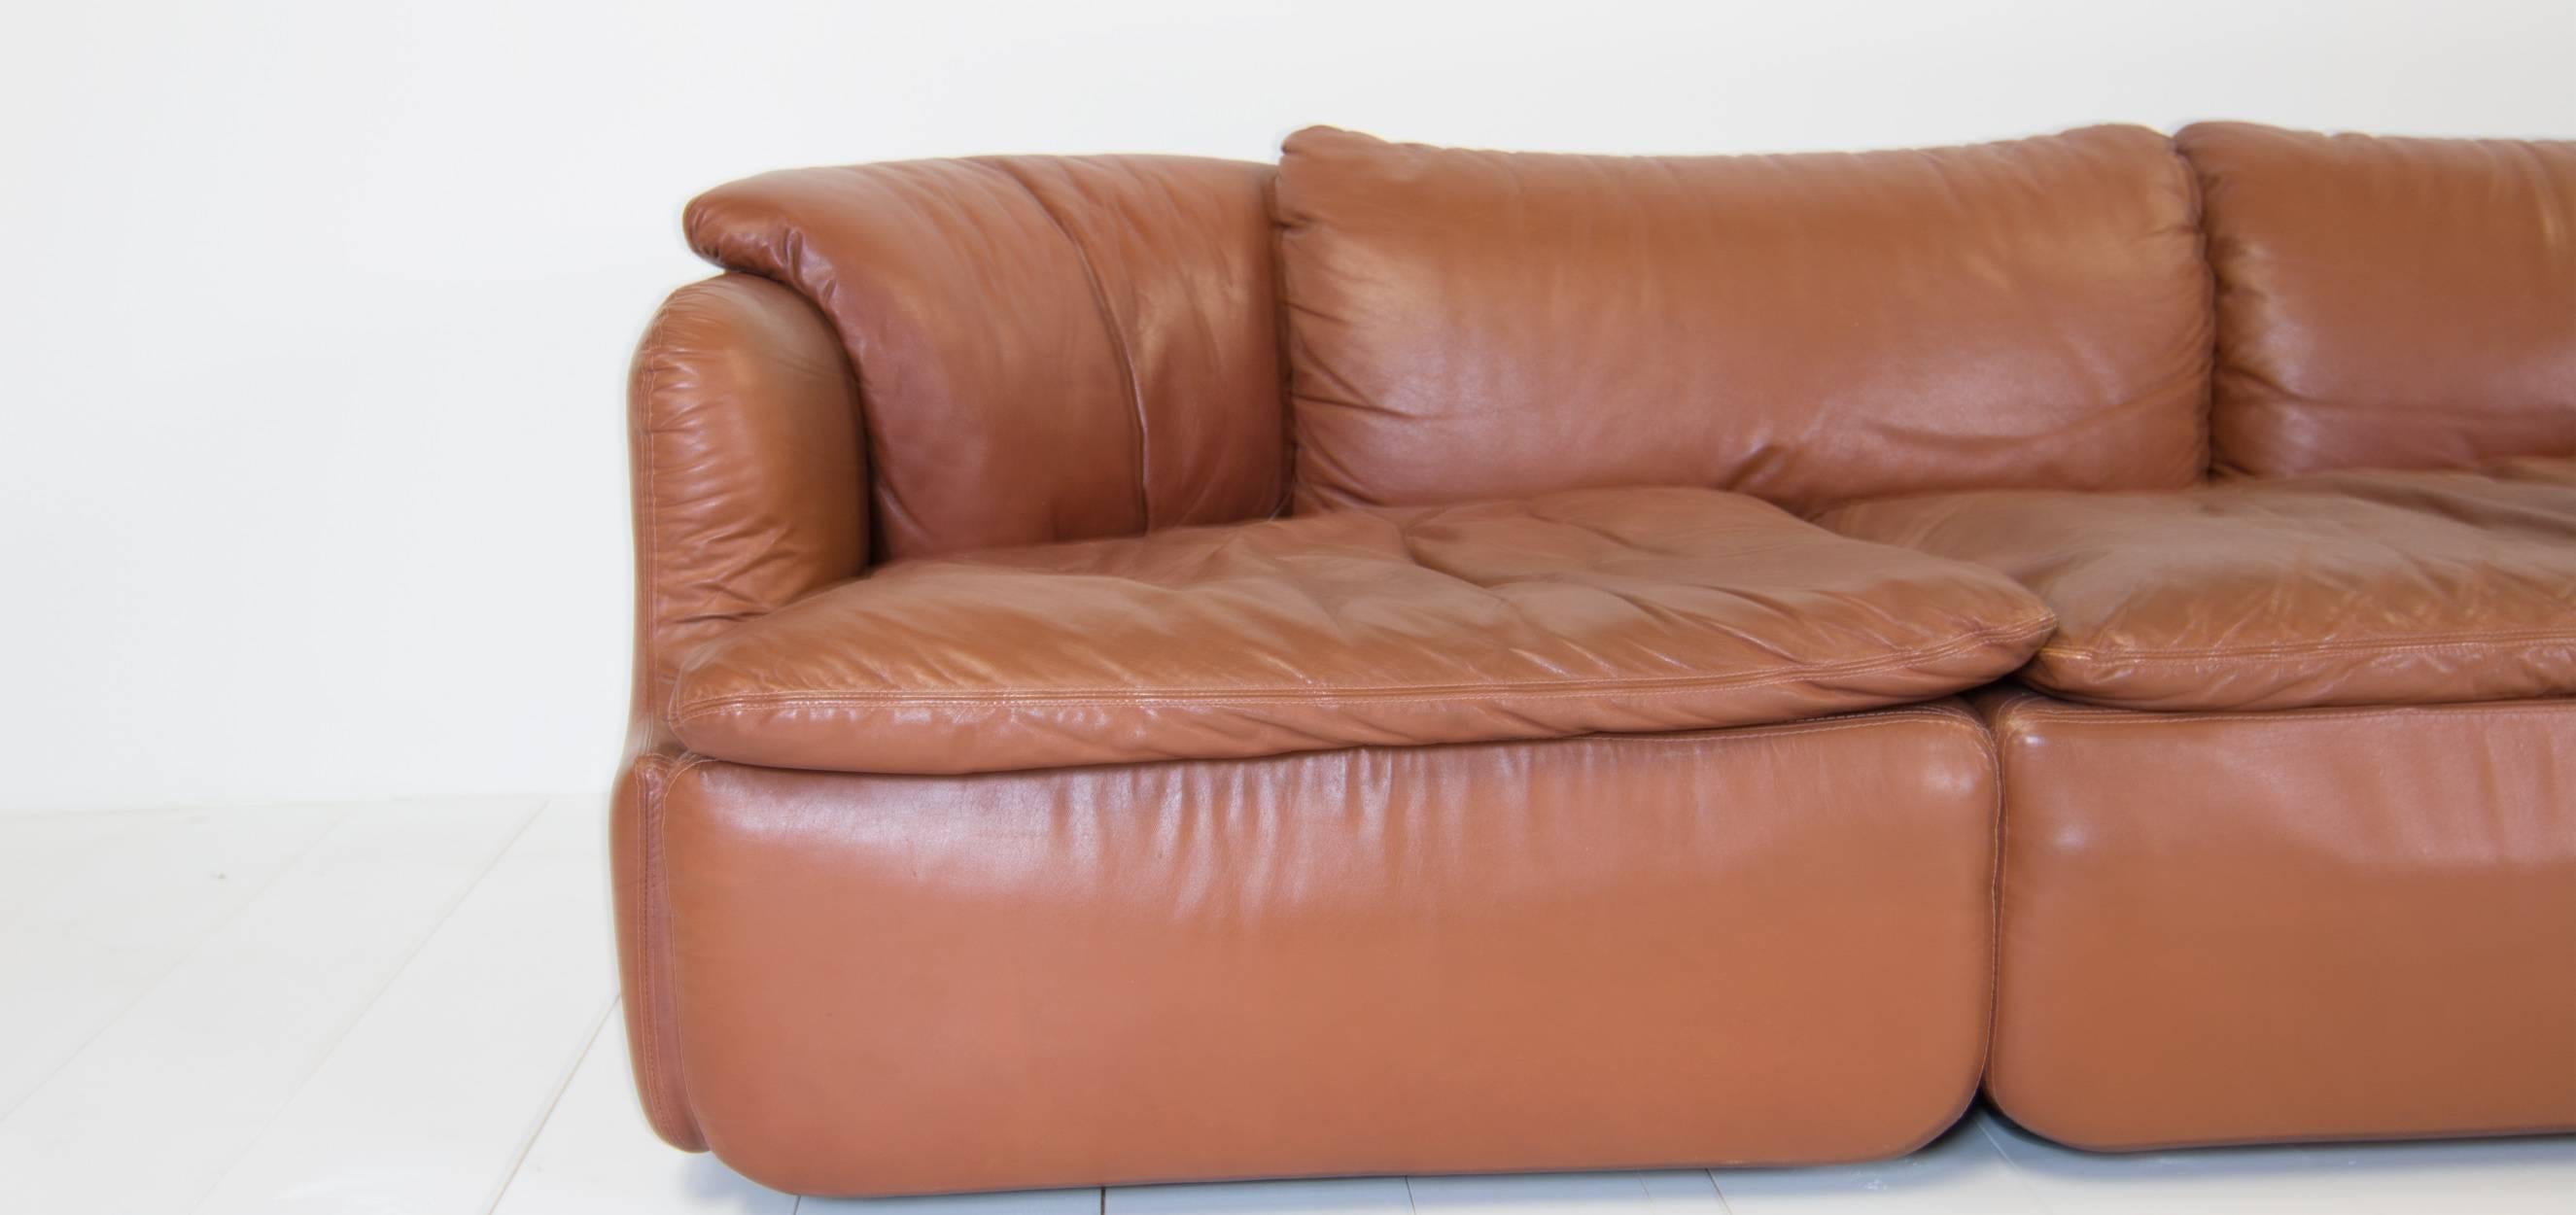 Late 20th Century Saporiti Sofa Designed by Alberto Rosselli, Model Confidentiala